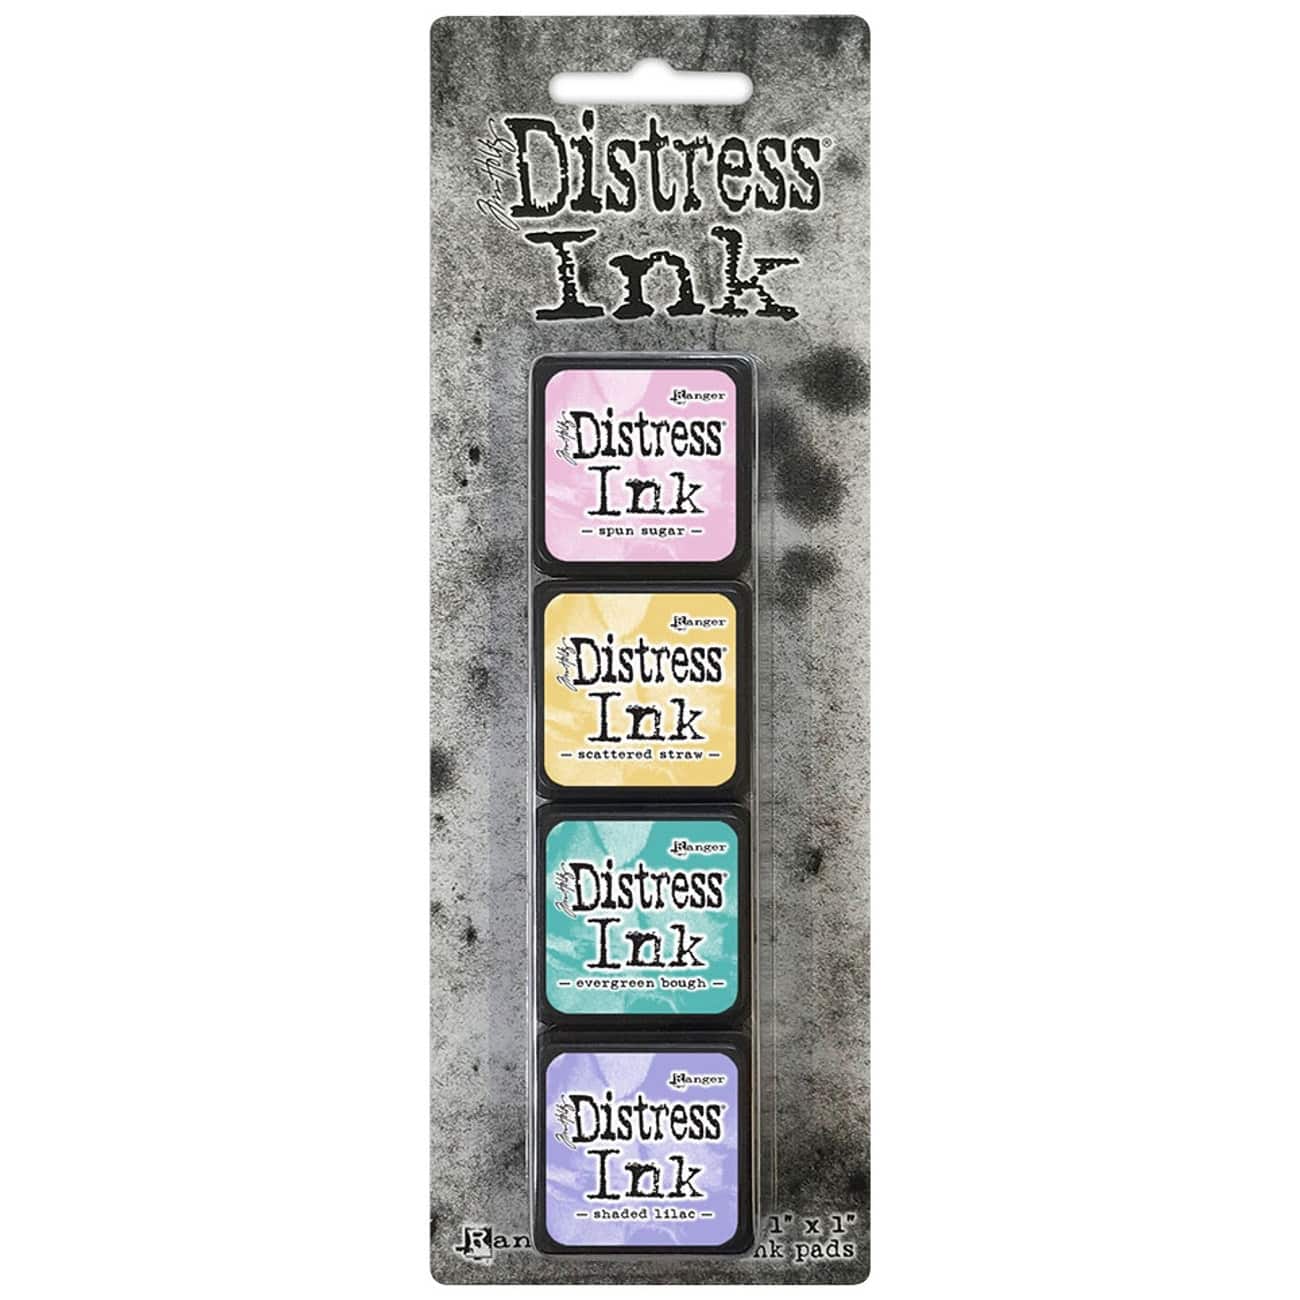 6 Packs: 4 ct. (24 total) Tim Holtz&#xAE; Distress Ink Pad Mini Kit #4